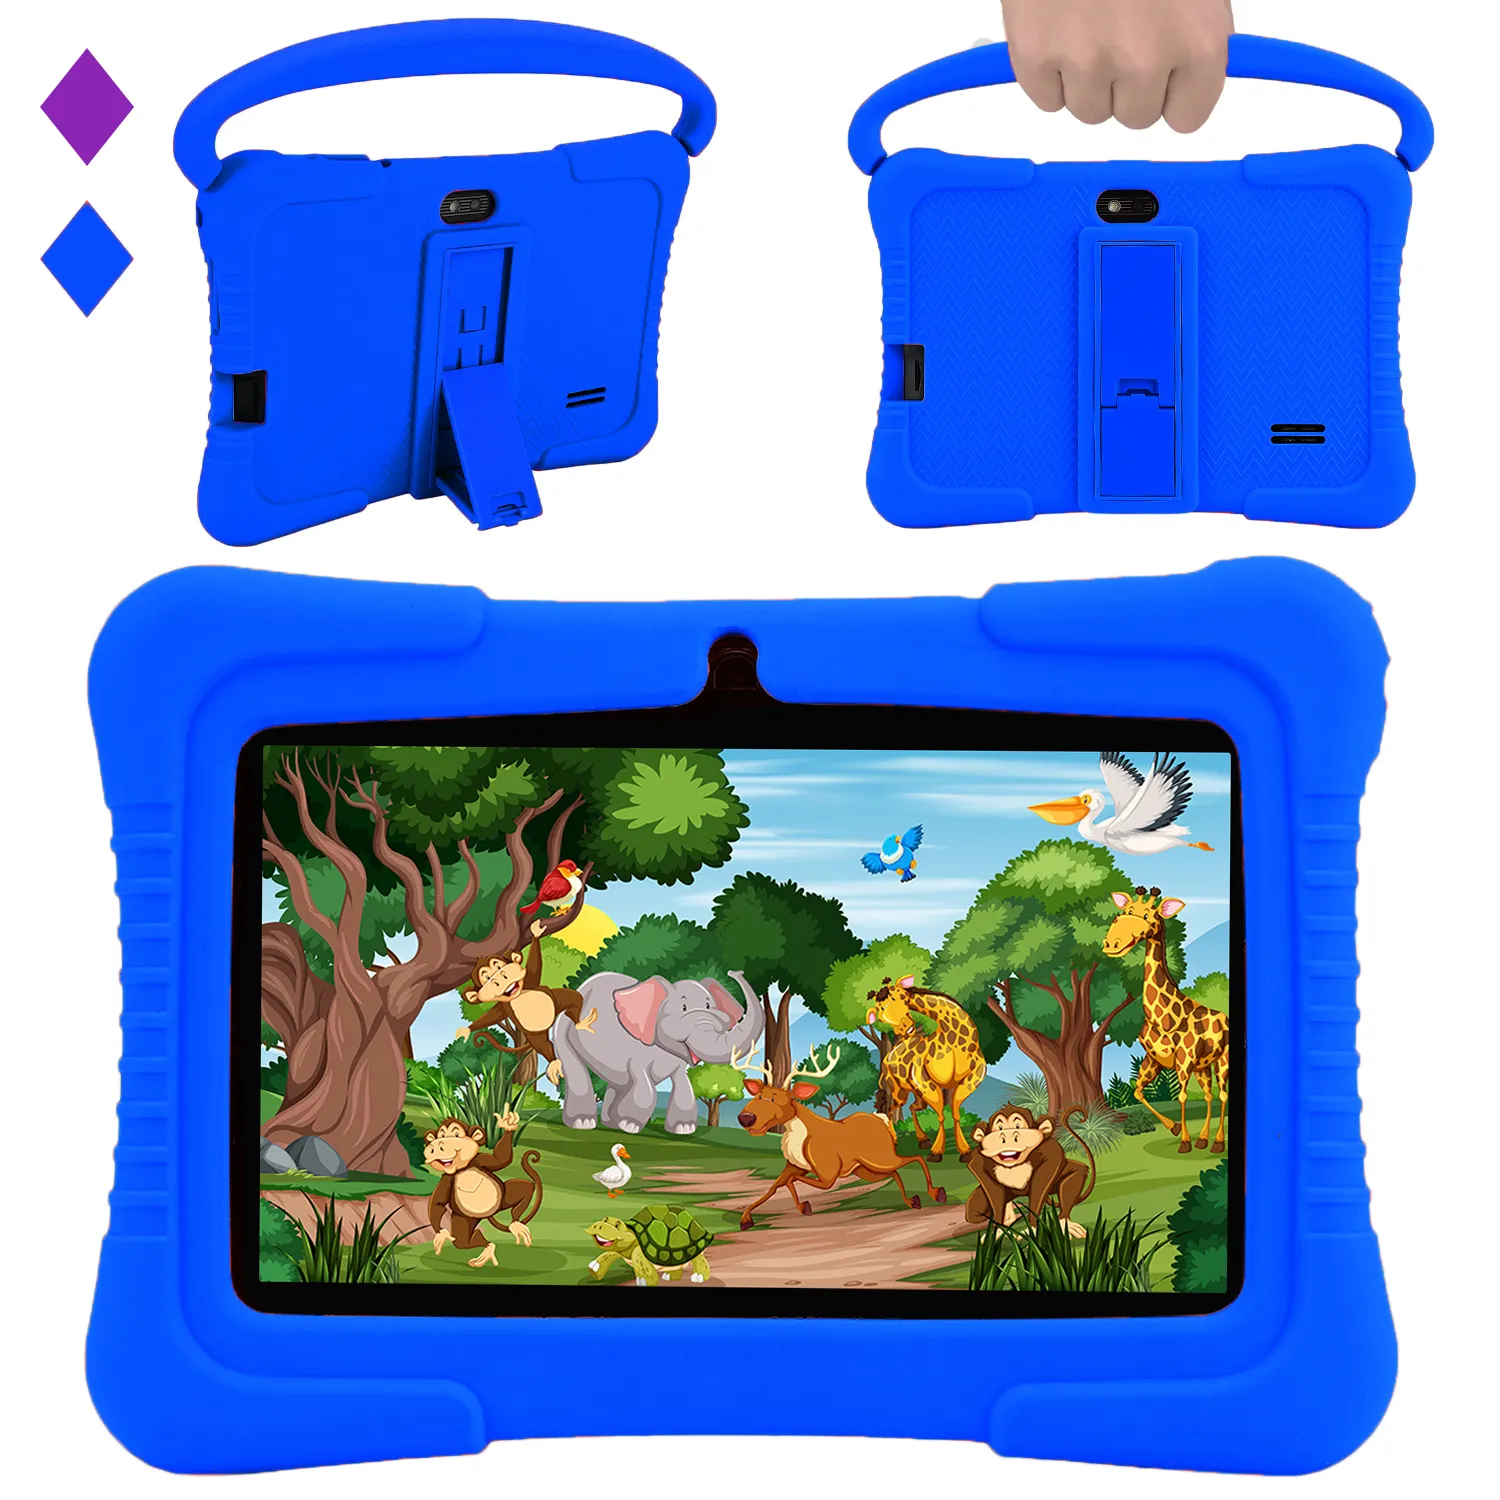 Veidoo Crianças Tablet Pc 7 polegada Android Tablet para Crianças 2GB Ram 32GB De Armazenamento Criança Tablet com Tela IPS Controle Parental